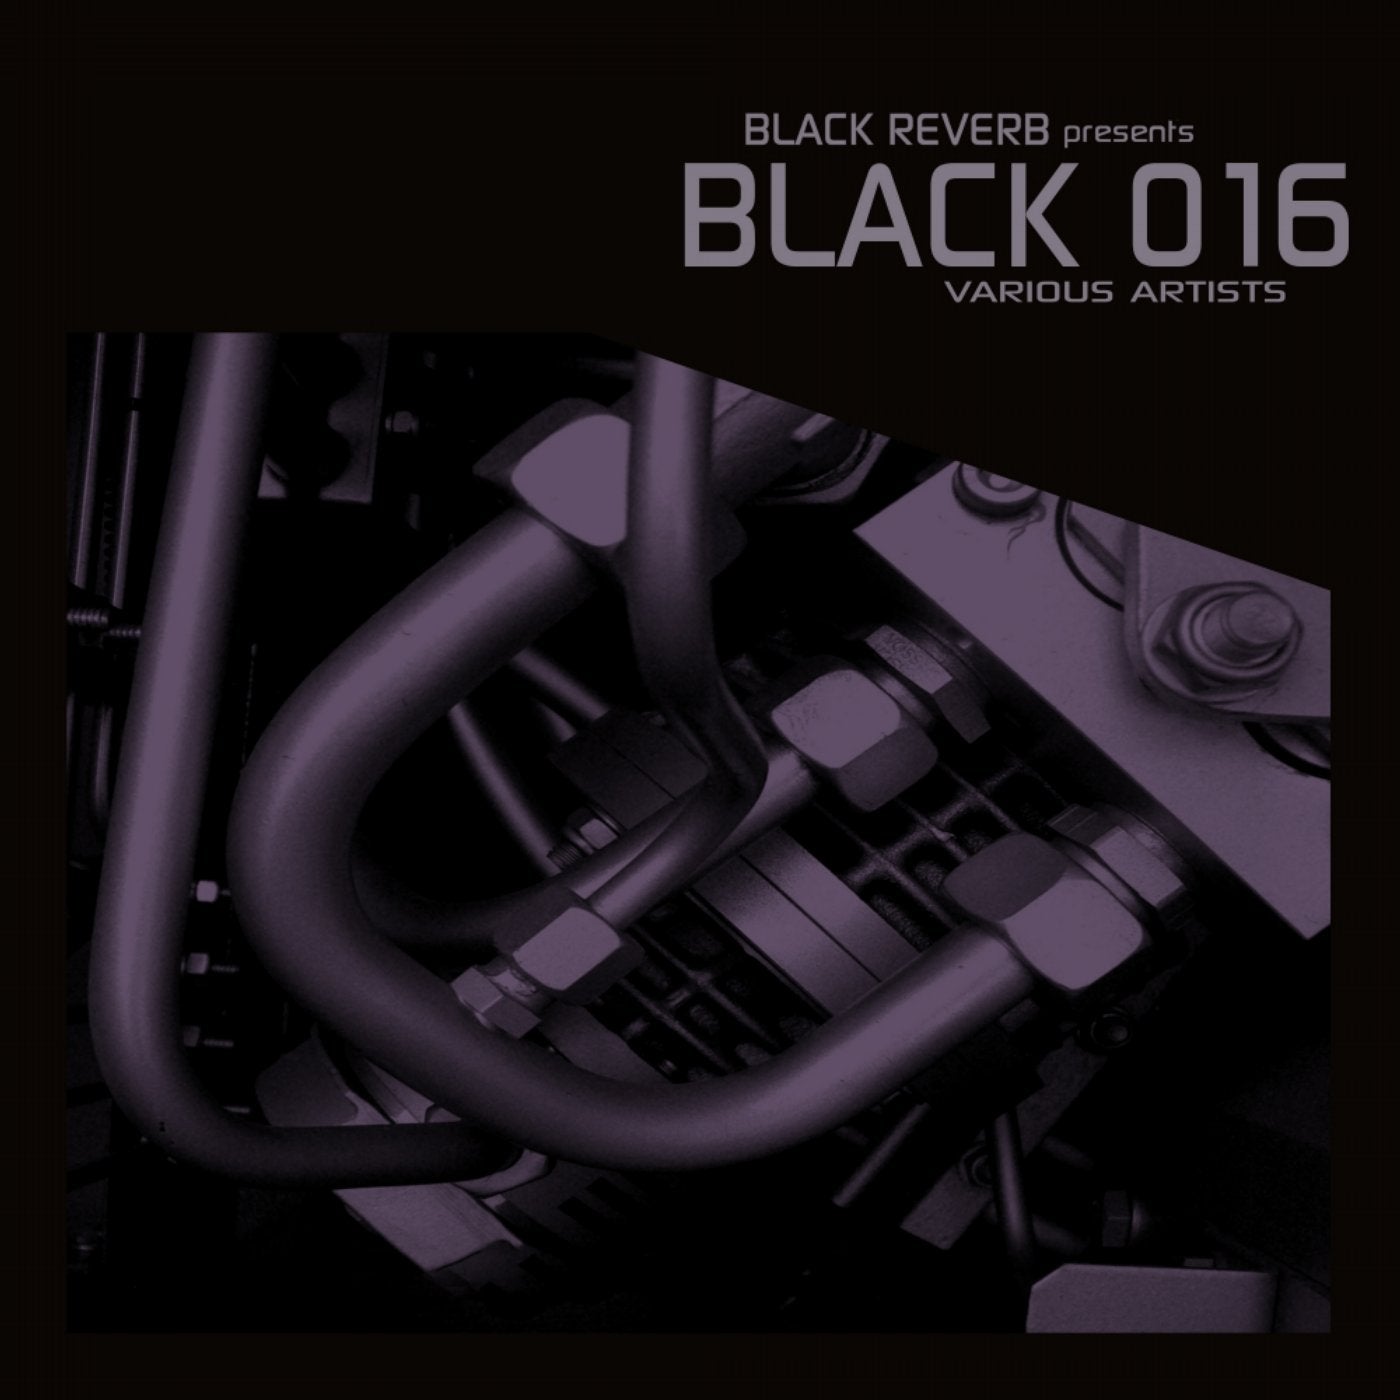 Black 016